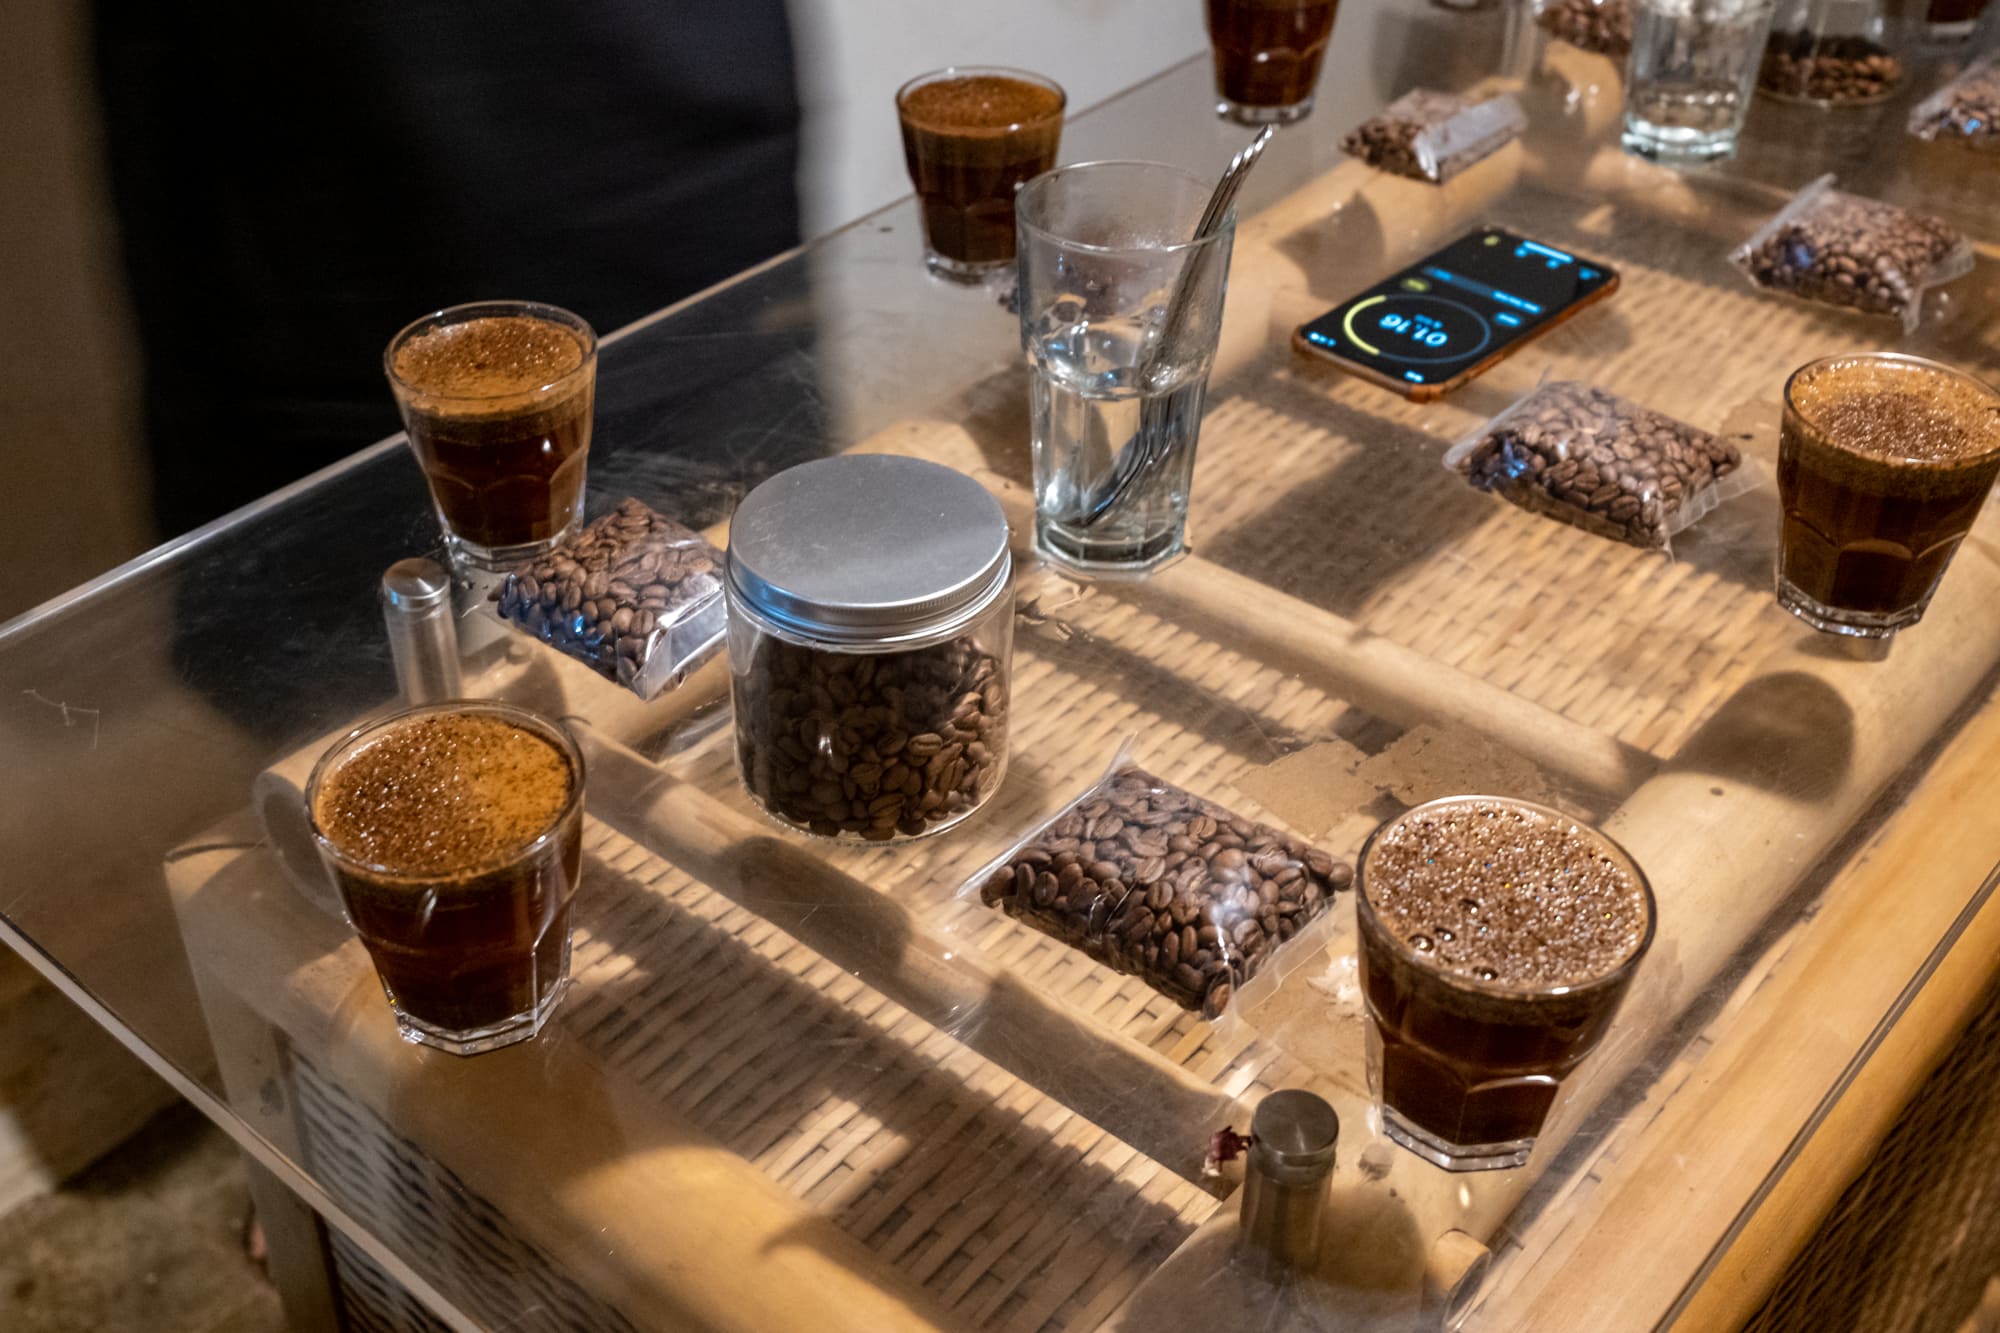 Cupping je ochutnávanie väčšieho množstva rôznych druhov kávy. Pražiari aj baristi „cuppujú“ pravidelne.